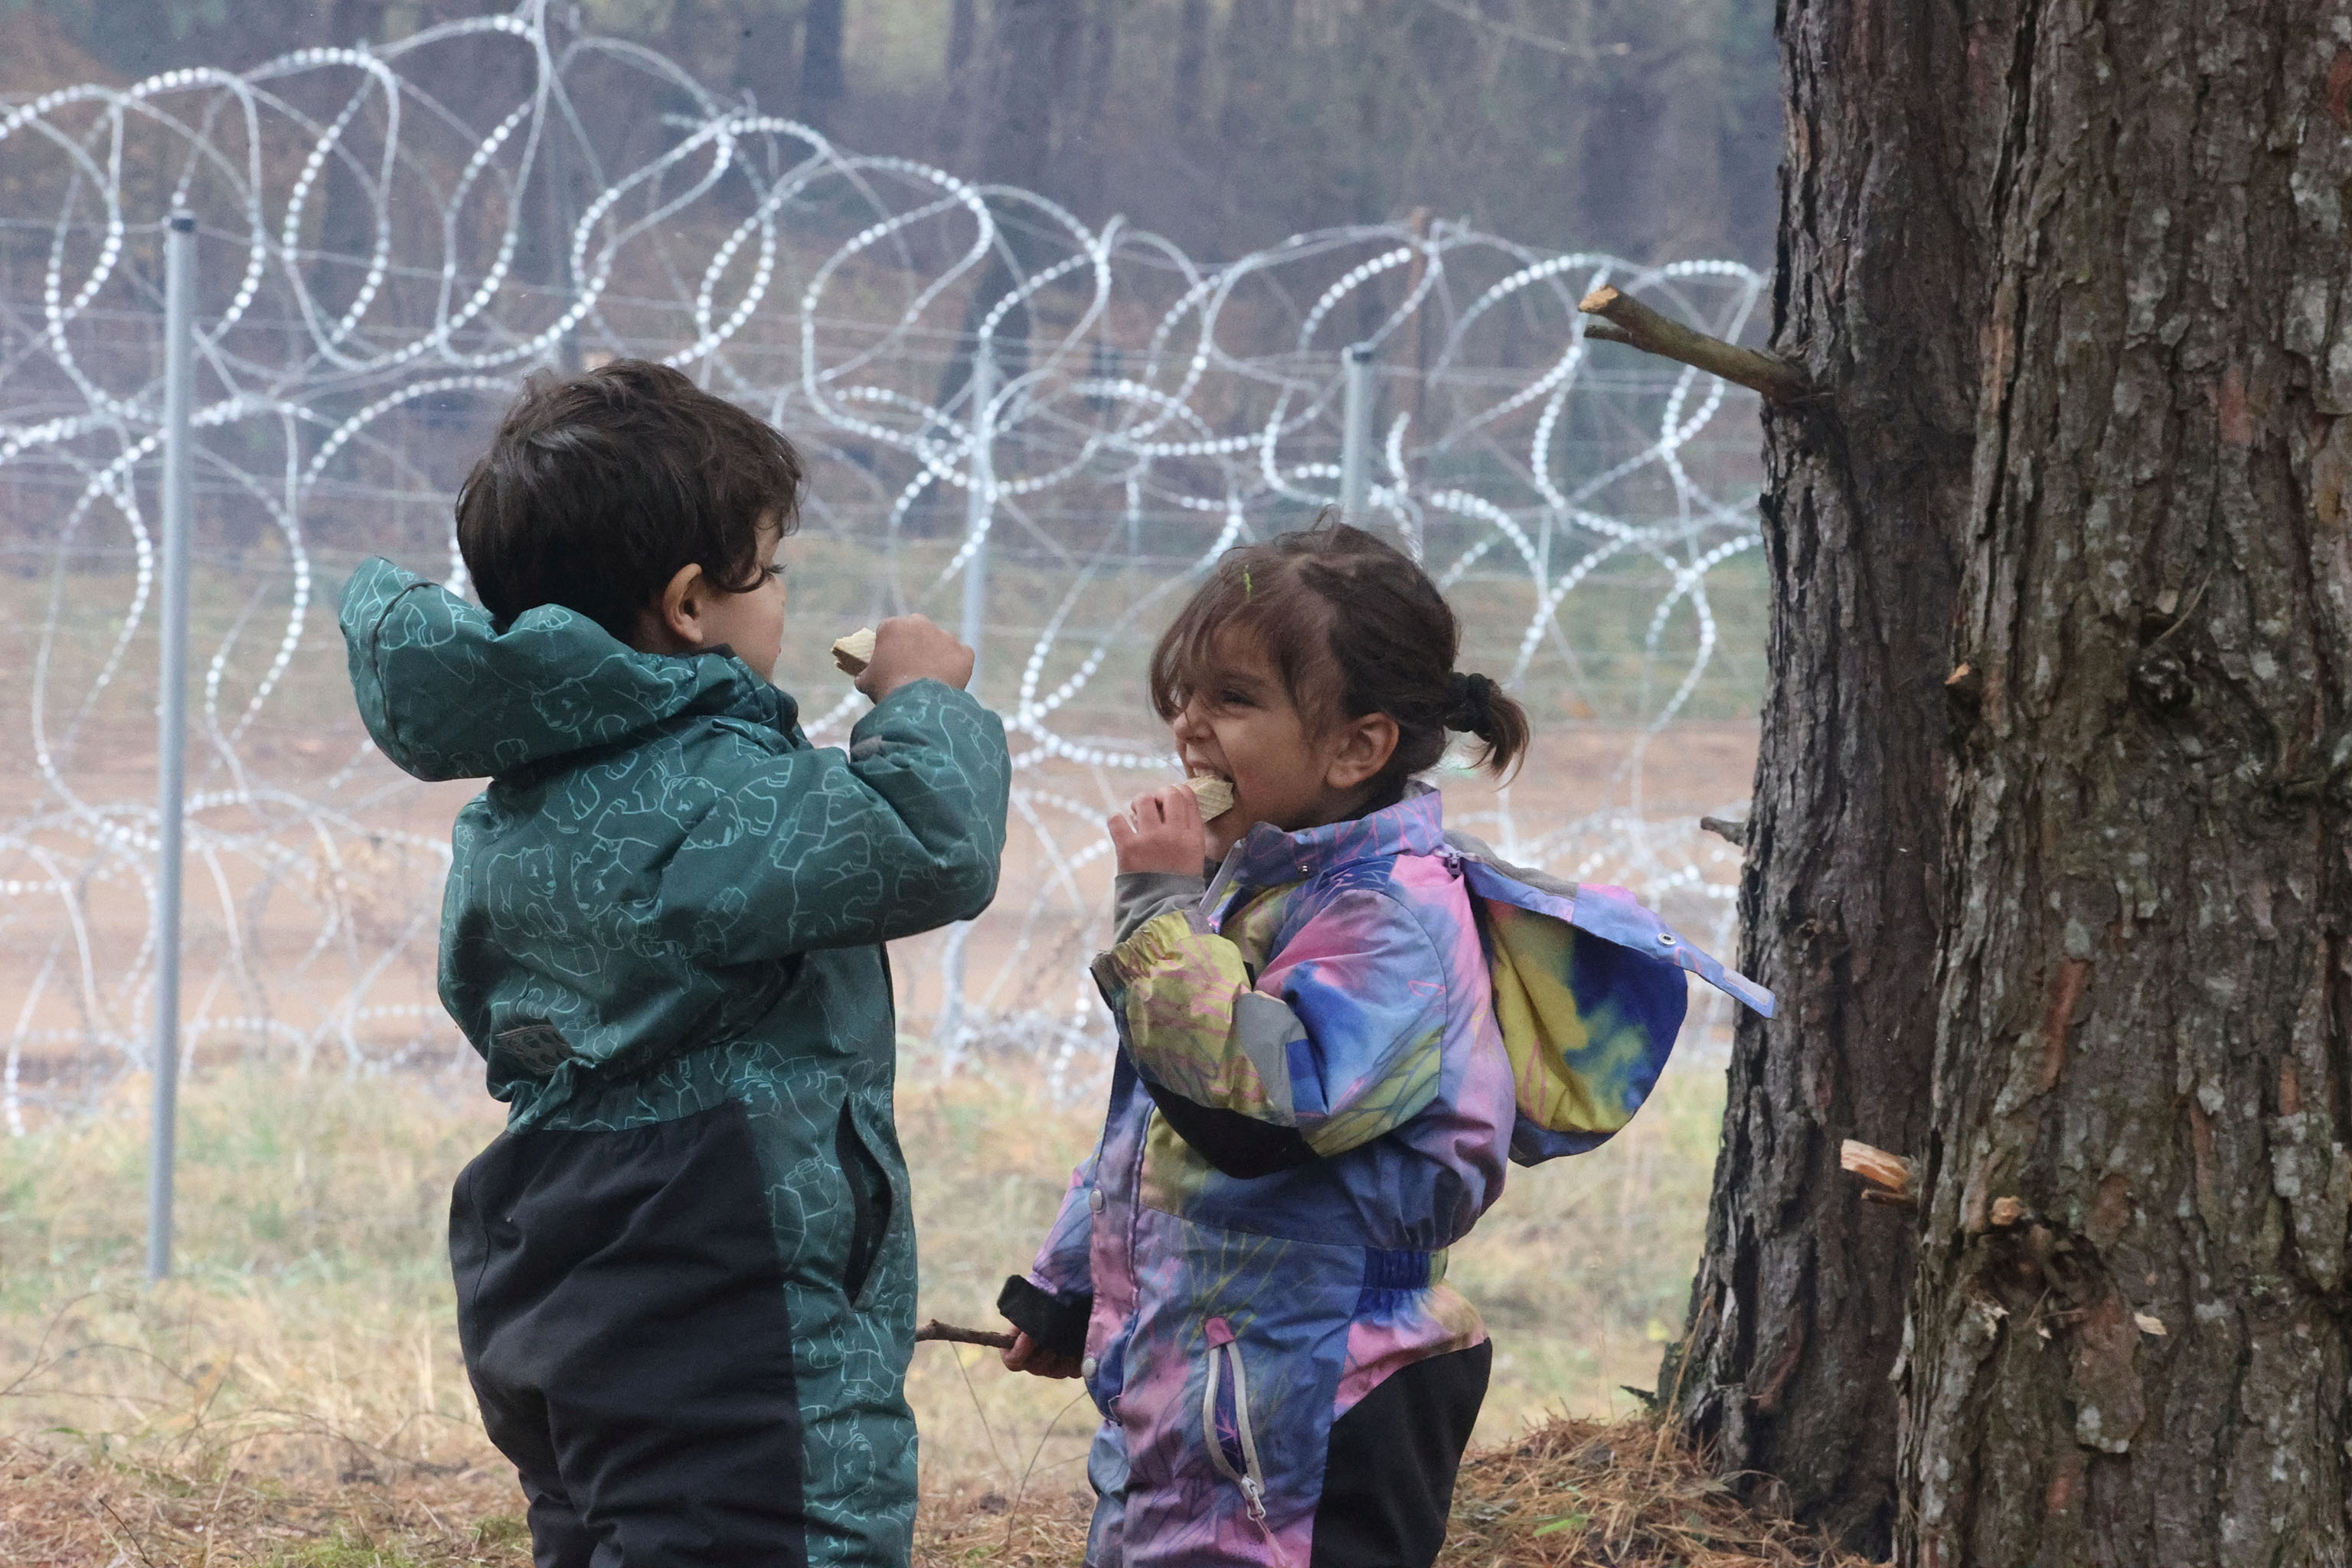 Los niños comen en un campamento improvisado para migrantes en la frontera bielorrusa-polaca en la región de Grodno, Bielorrusia 13 de noviembre de 2021. Leonid Scheglov / BelTA / Handout via REUTERS